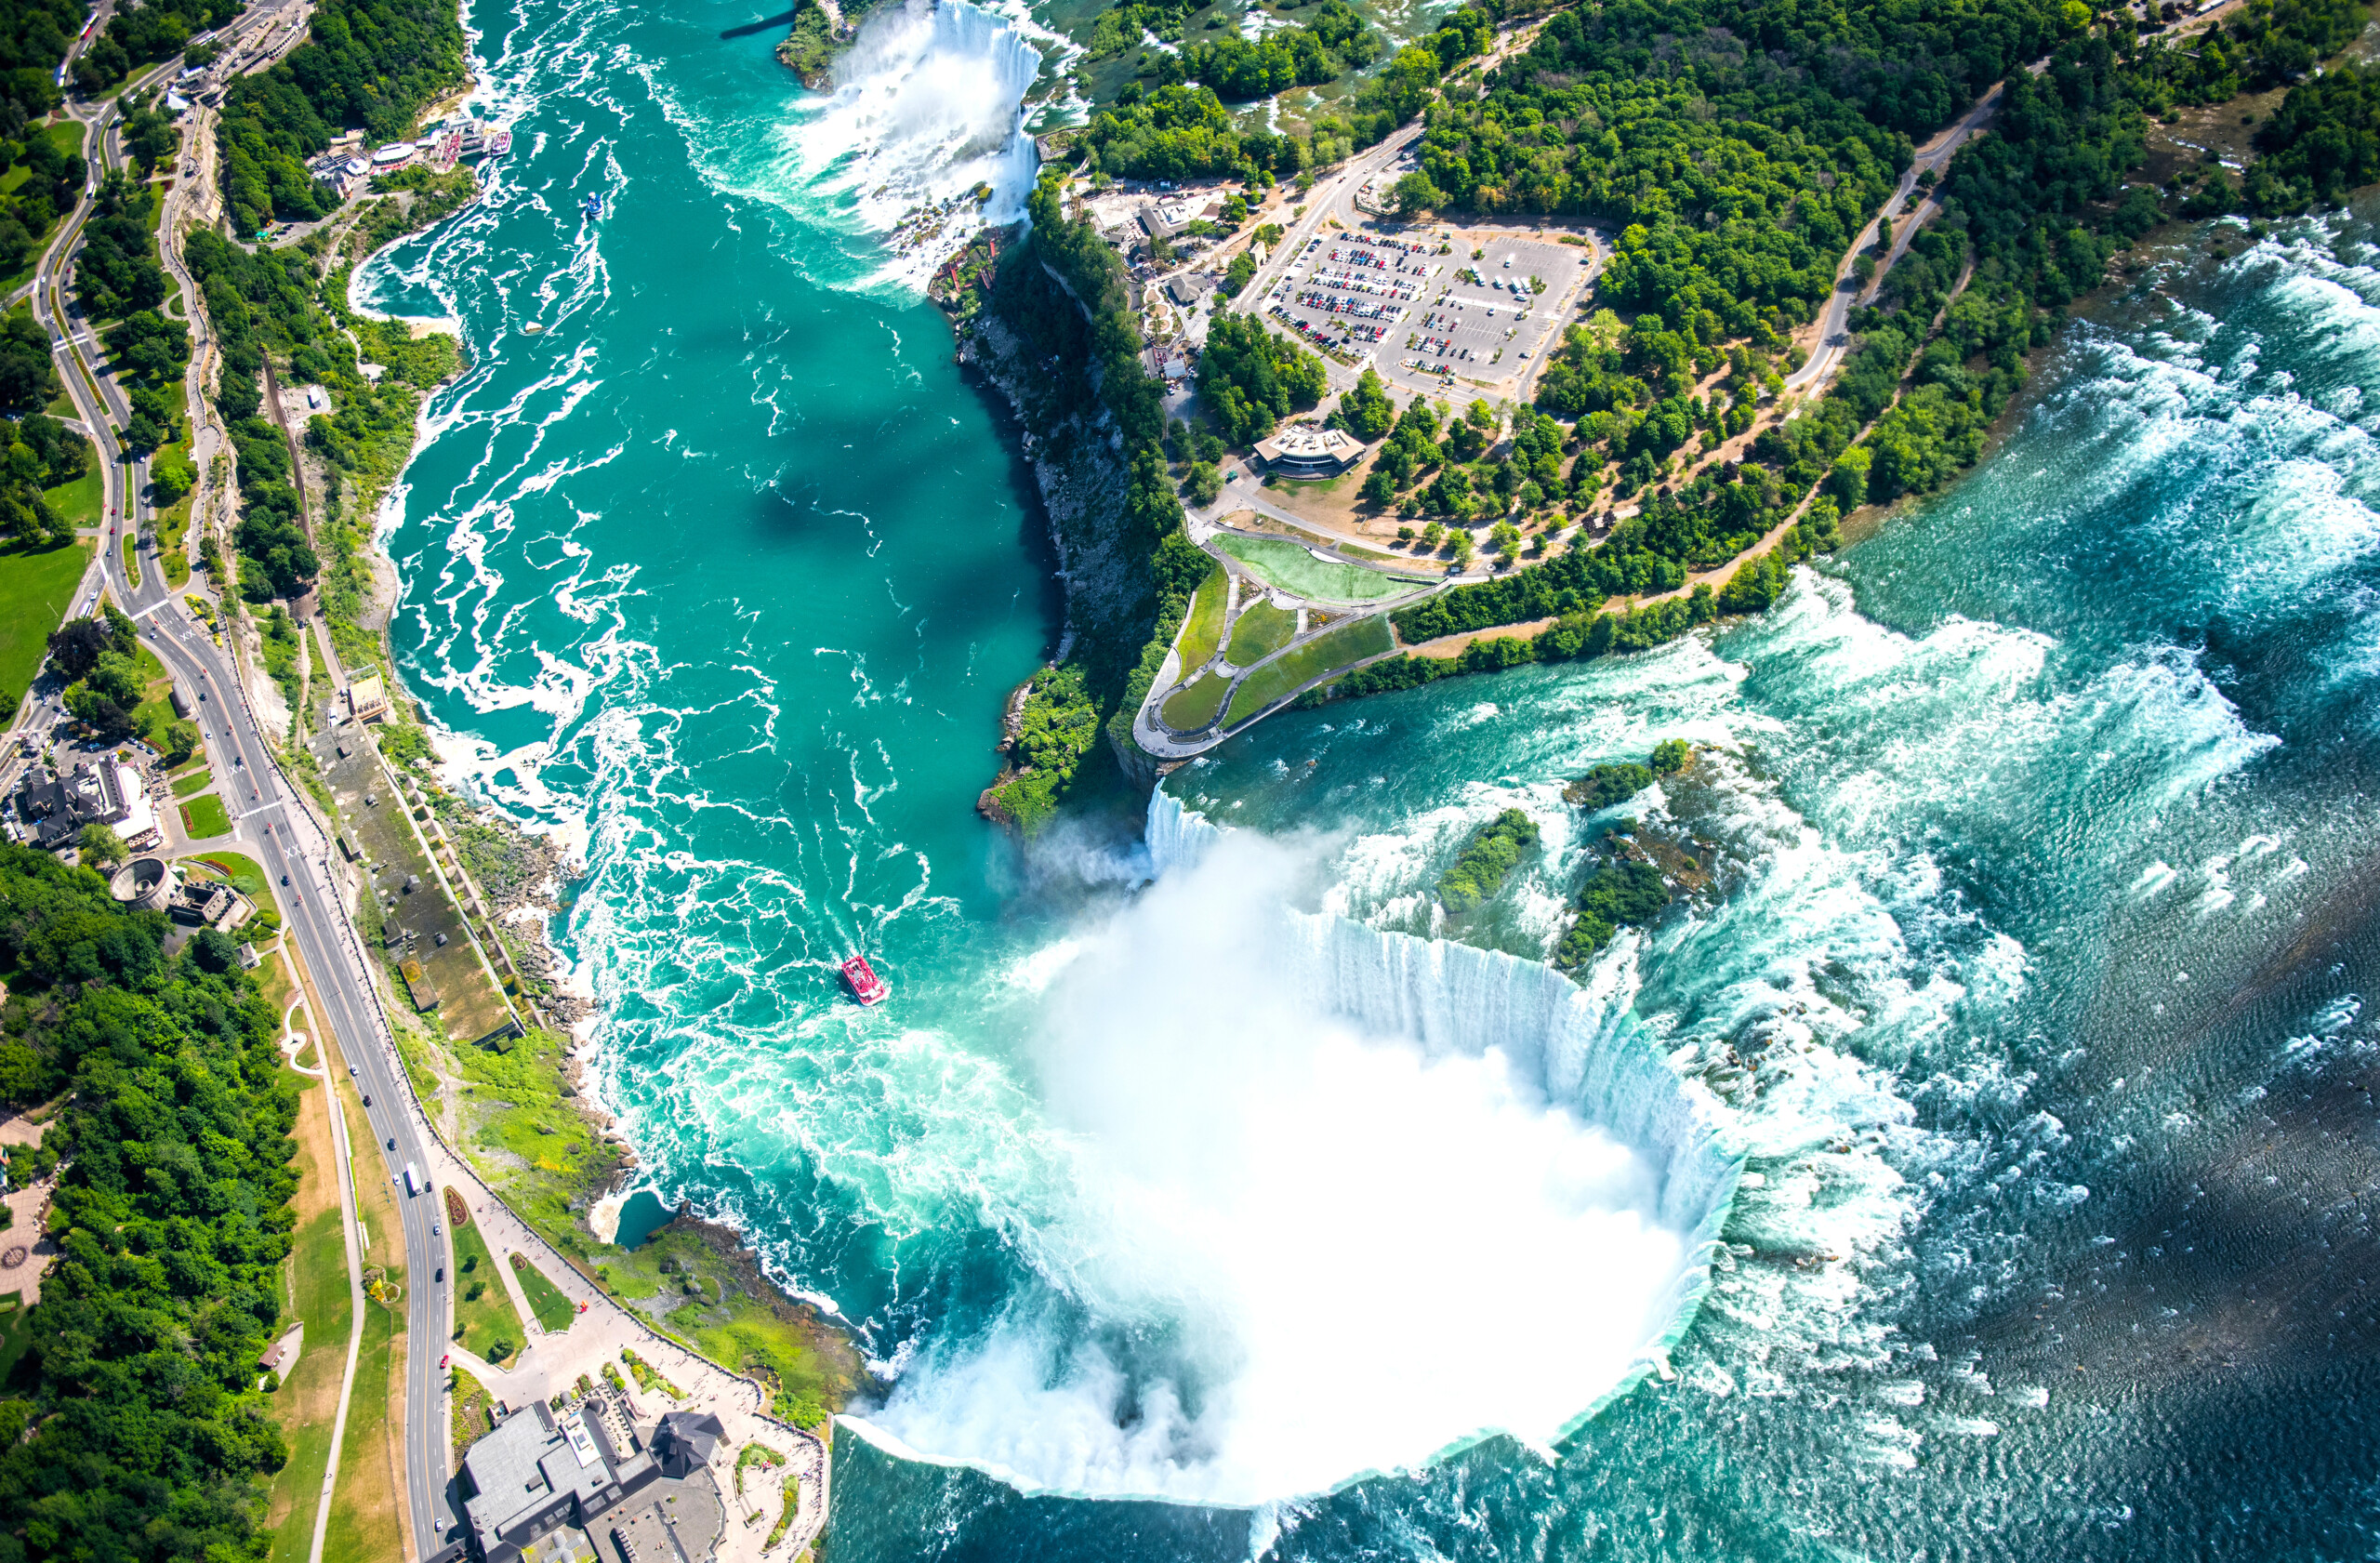 Wodospad Niagara, Widok ze śmigłowca, Canadian Falls, Kanada, licencja: shutterstock/By TRphotos